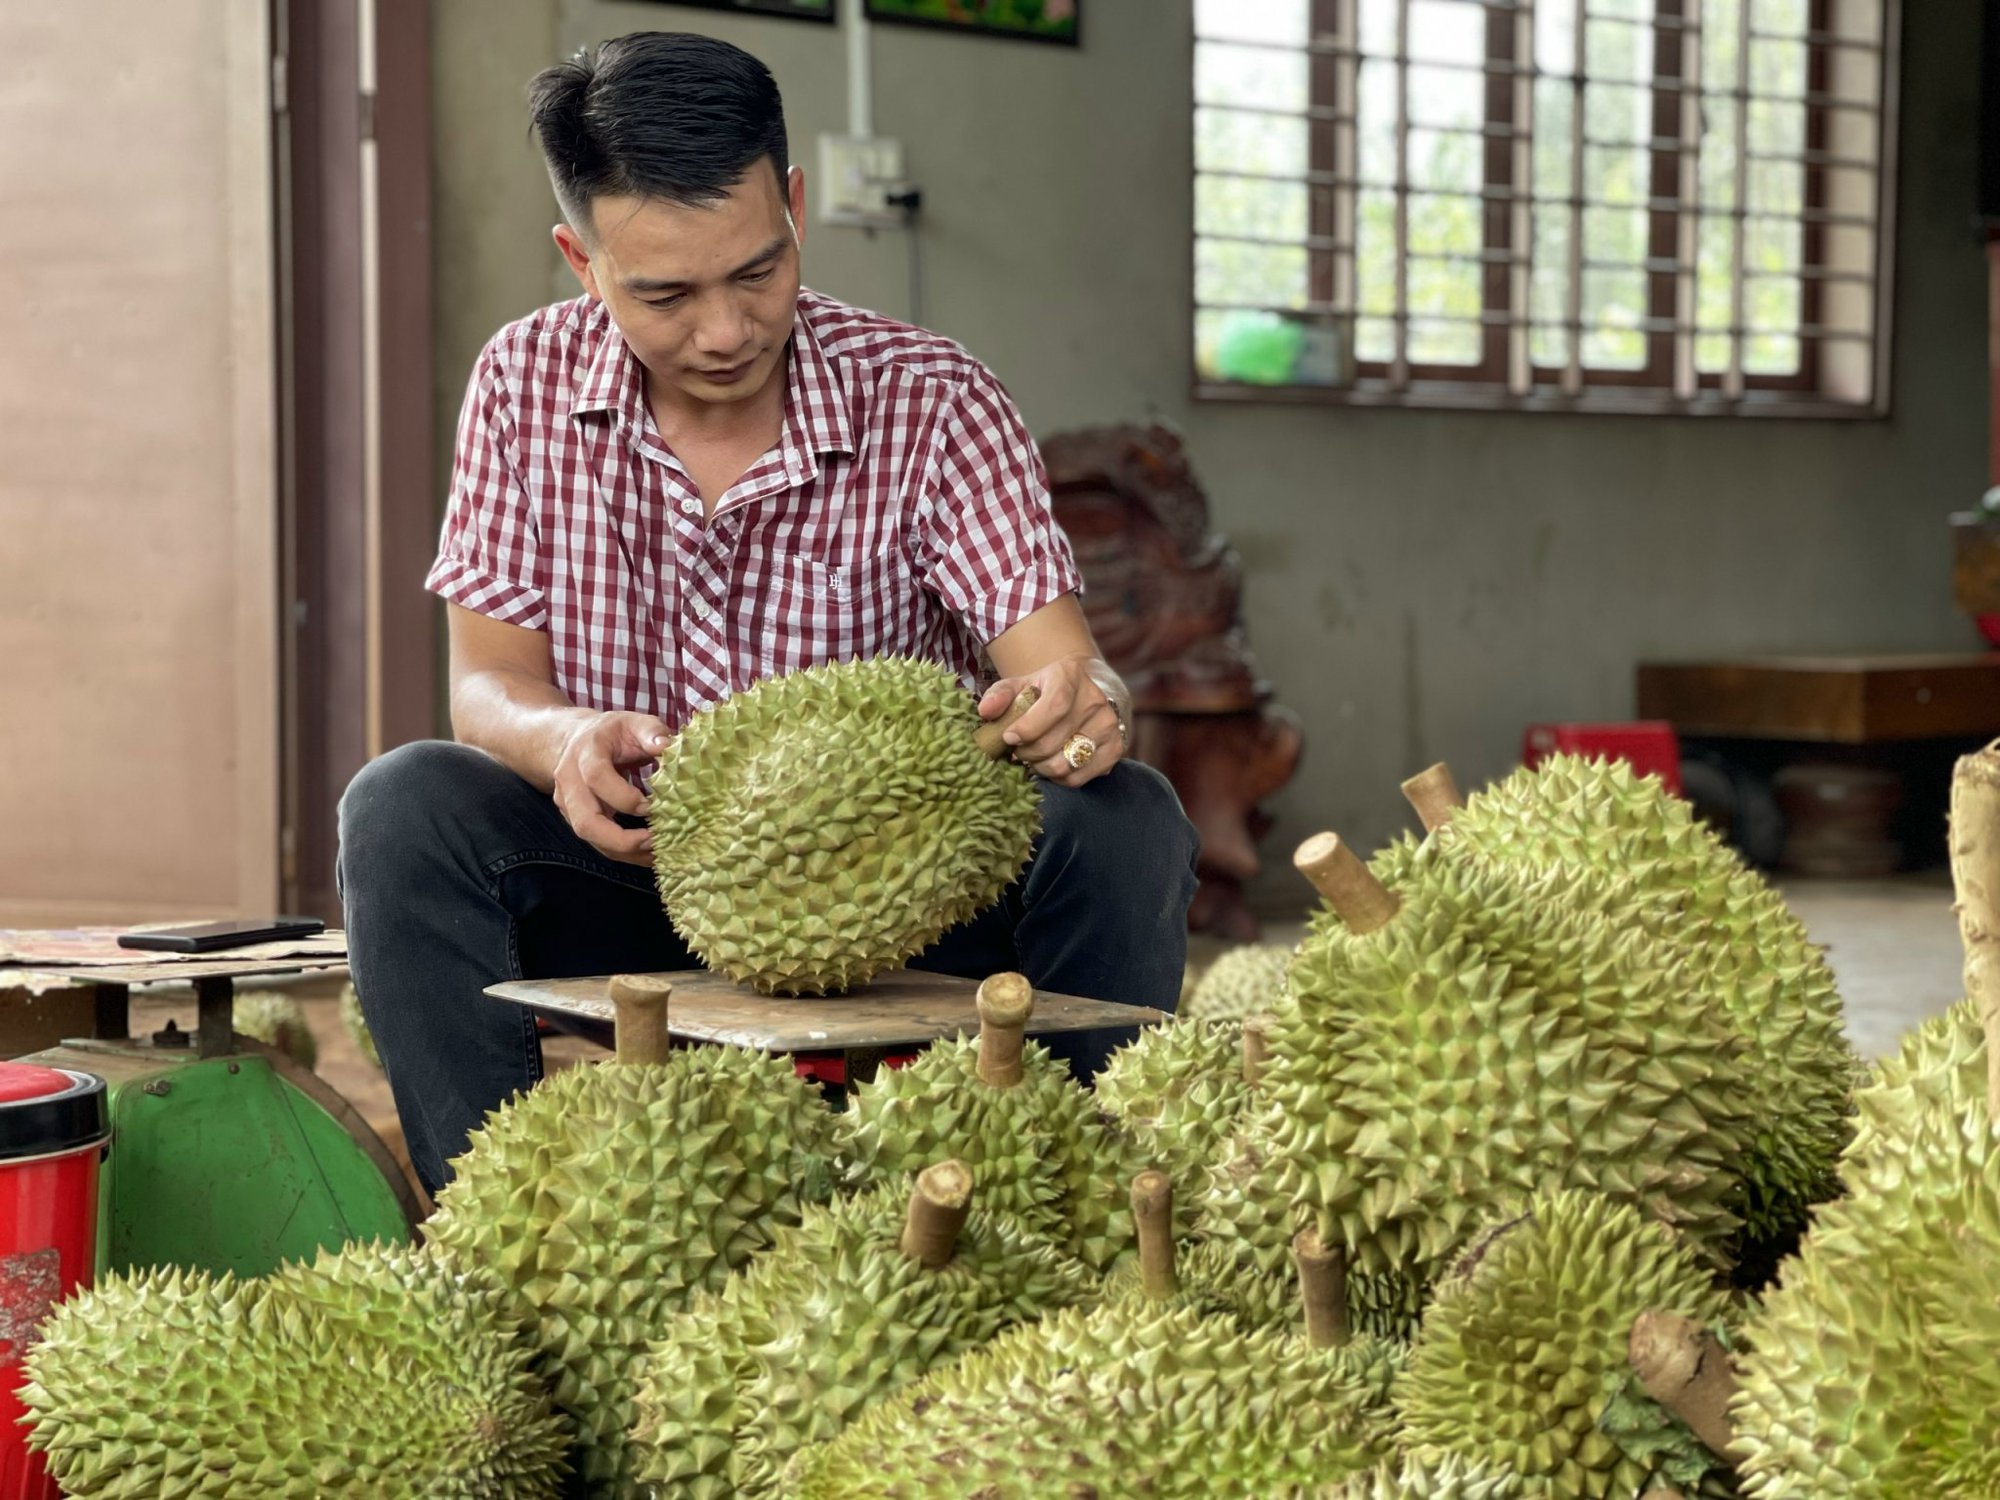 Bán đến 90% một loại trái cây cho Trung Quốc, Việt Nam dự kiến thu 1,2 - 1,3 tỷ USD - Ảnh 1.